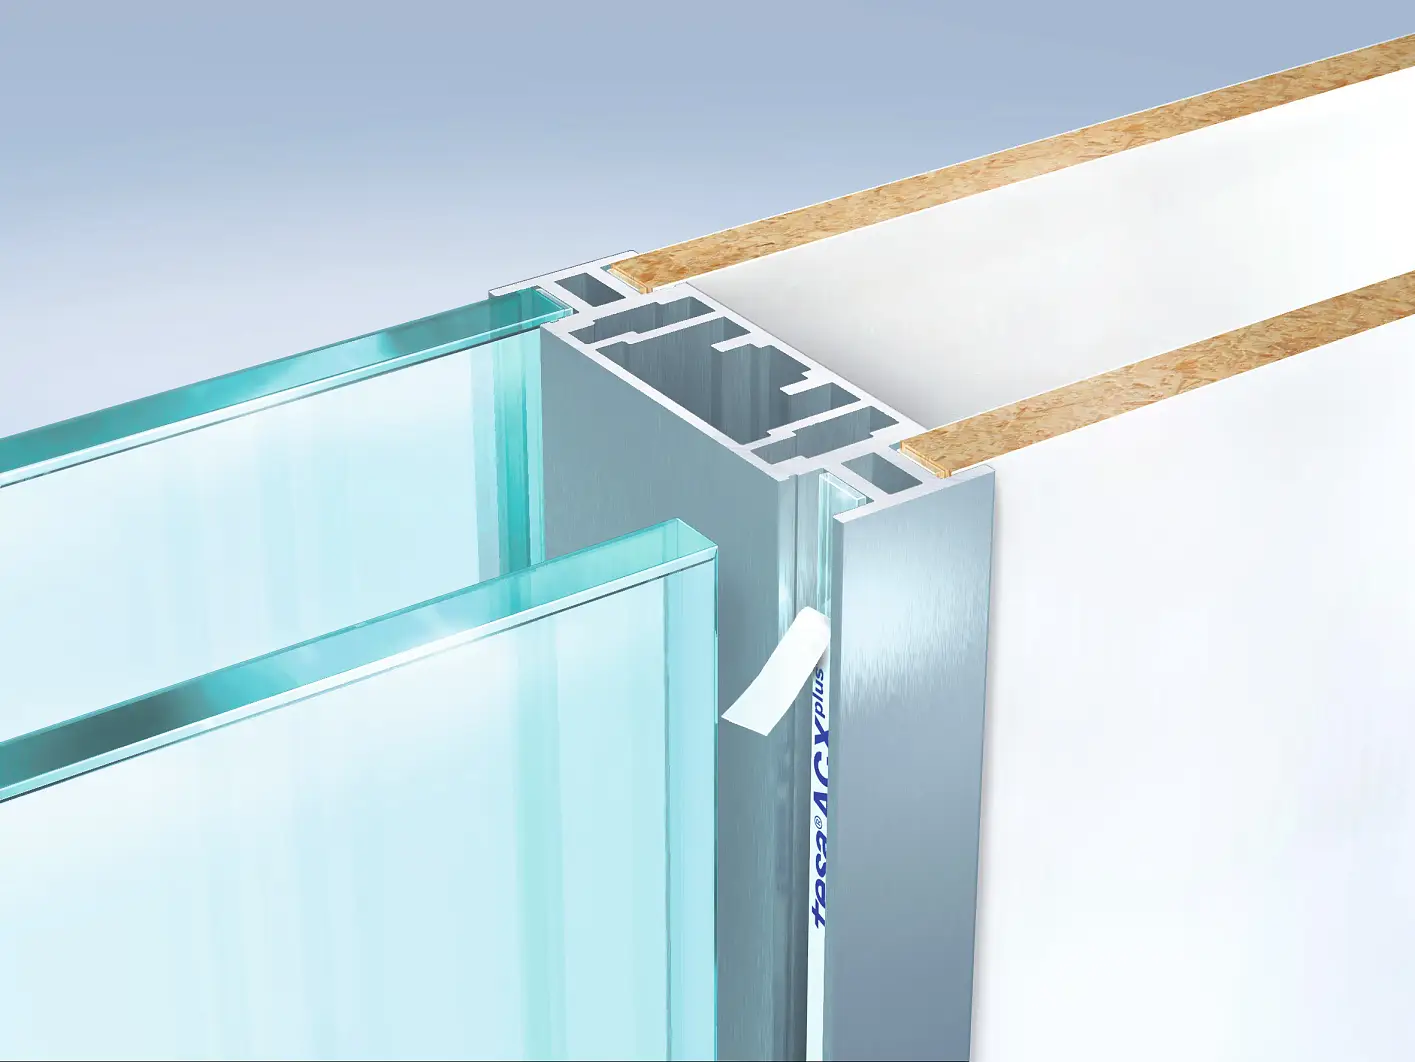 Unión de vidrio o madera laminada en marcos de aluminios o sobre su superficie